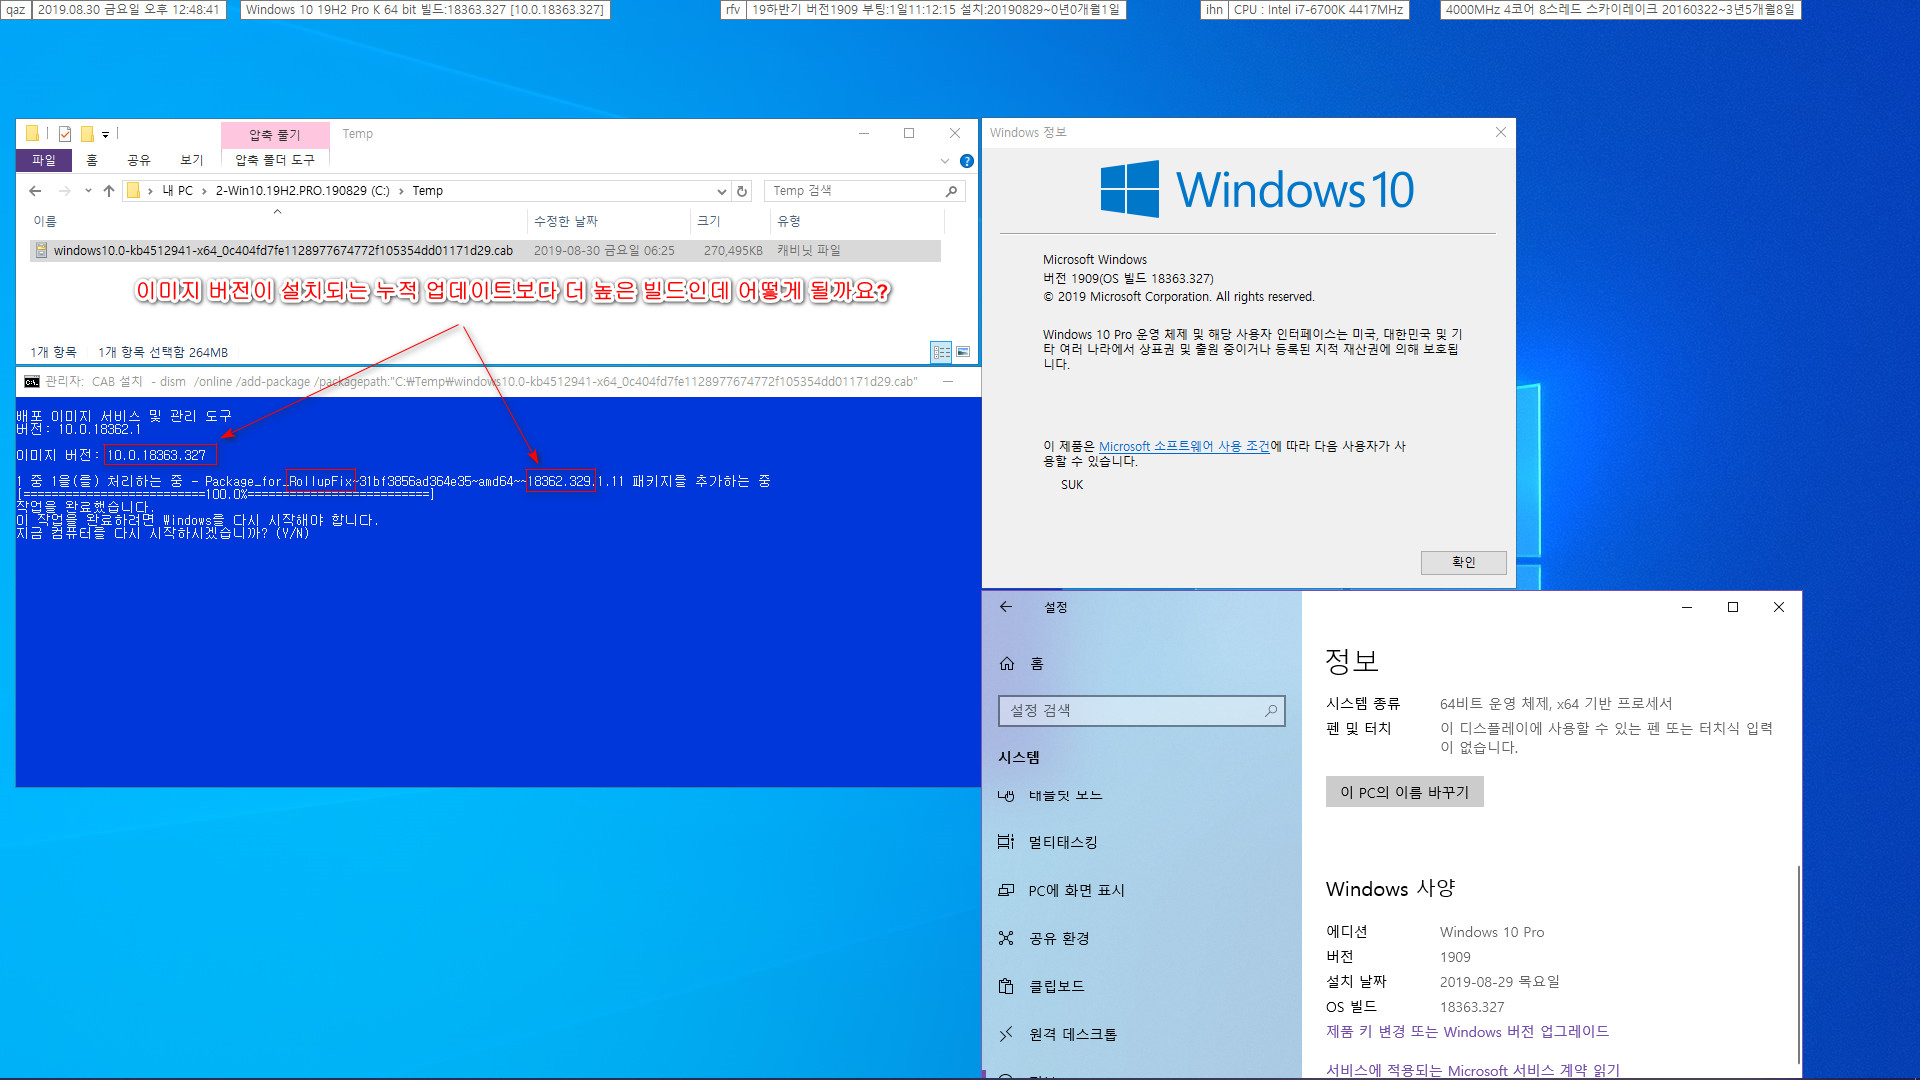 Windows 10 버전 1909 (OS 빌드 18363.329) [2019-08-29 일자] 릴리스 프리뷰 나왔네요 - 실컴에 설치 - 서비스 스택 업데이트는 이전과 같기 때문에 누적 업데이트만 설치했습니다 2019-08-30_124841.jpg